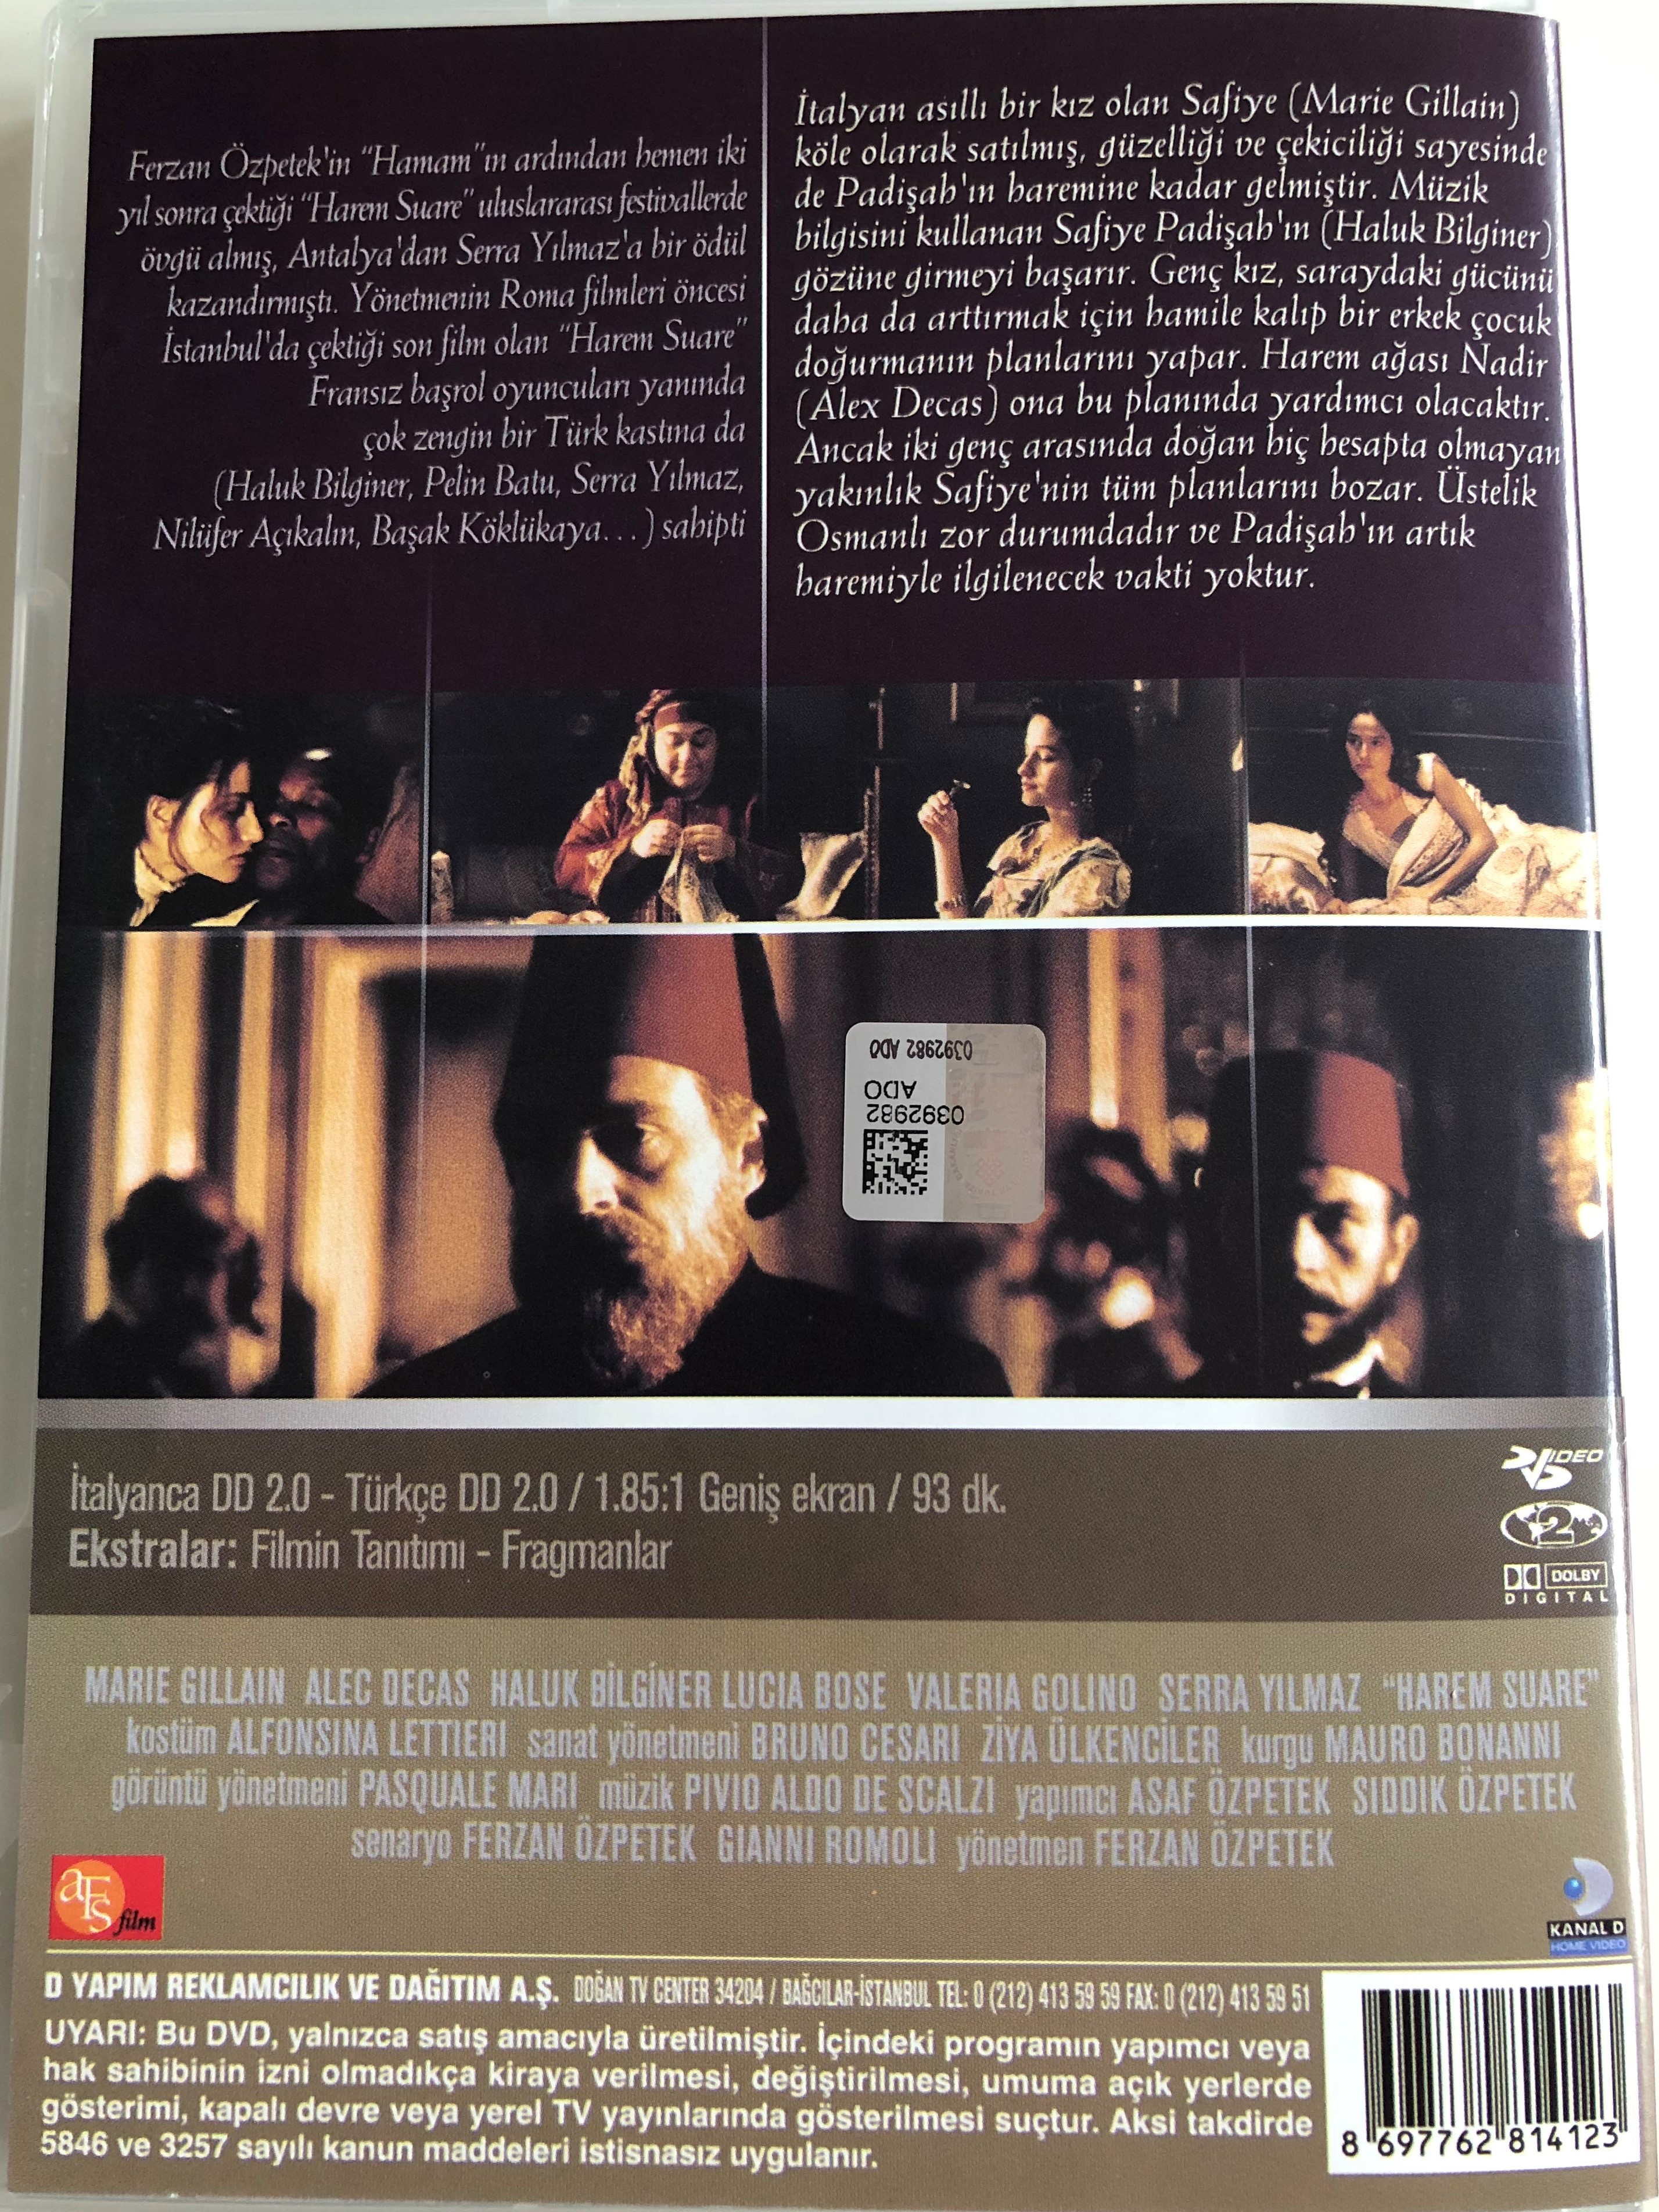 harem-suare-dvd-1999-directed-by-ferzan-zpetek-starring-marie-gillain-alex-descas-3.jpg